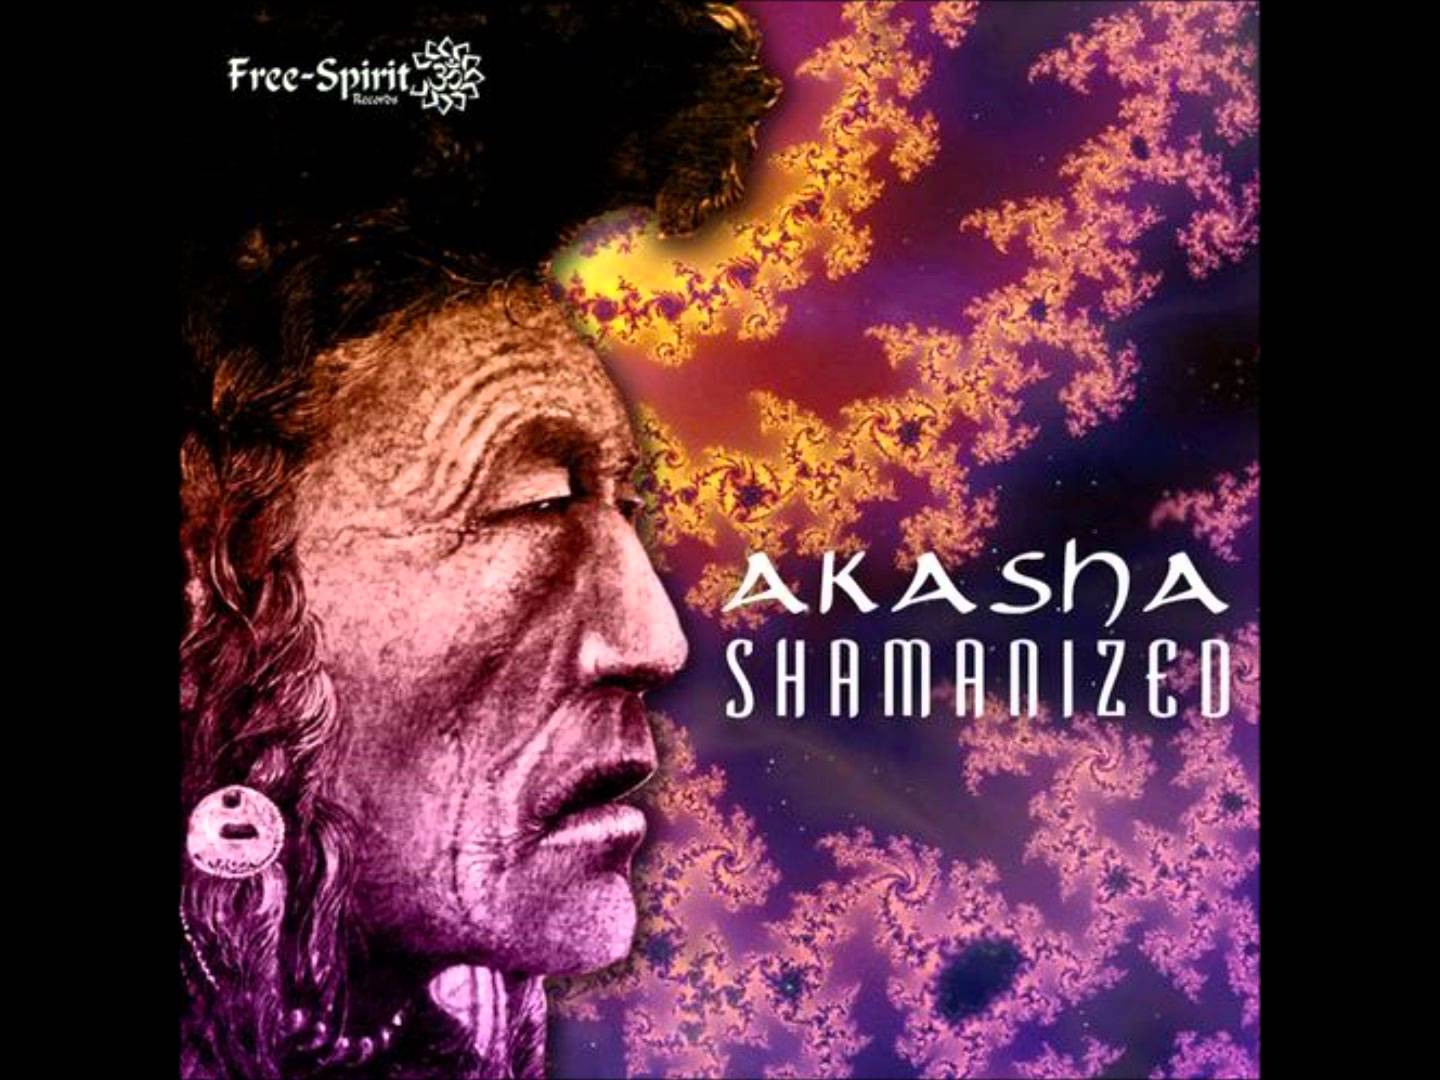 Akasha – Shamanized EP (Free-Spirit)